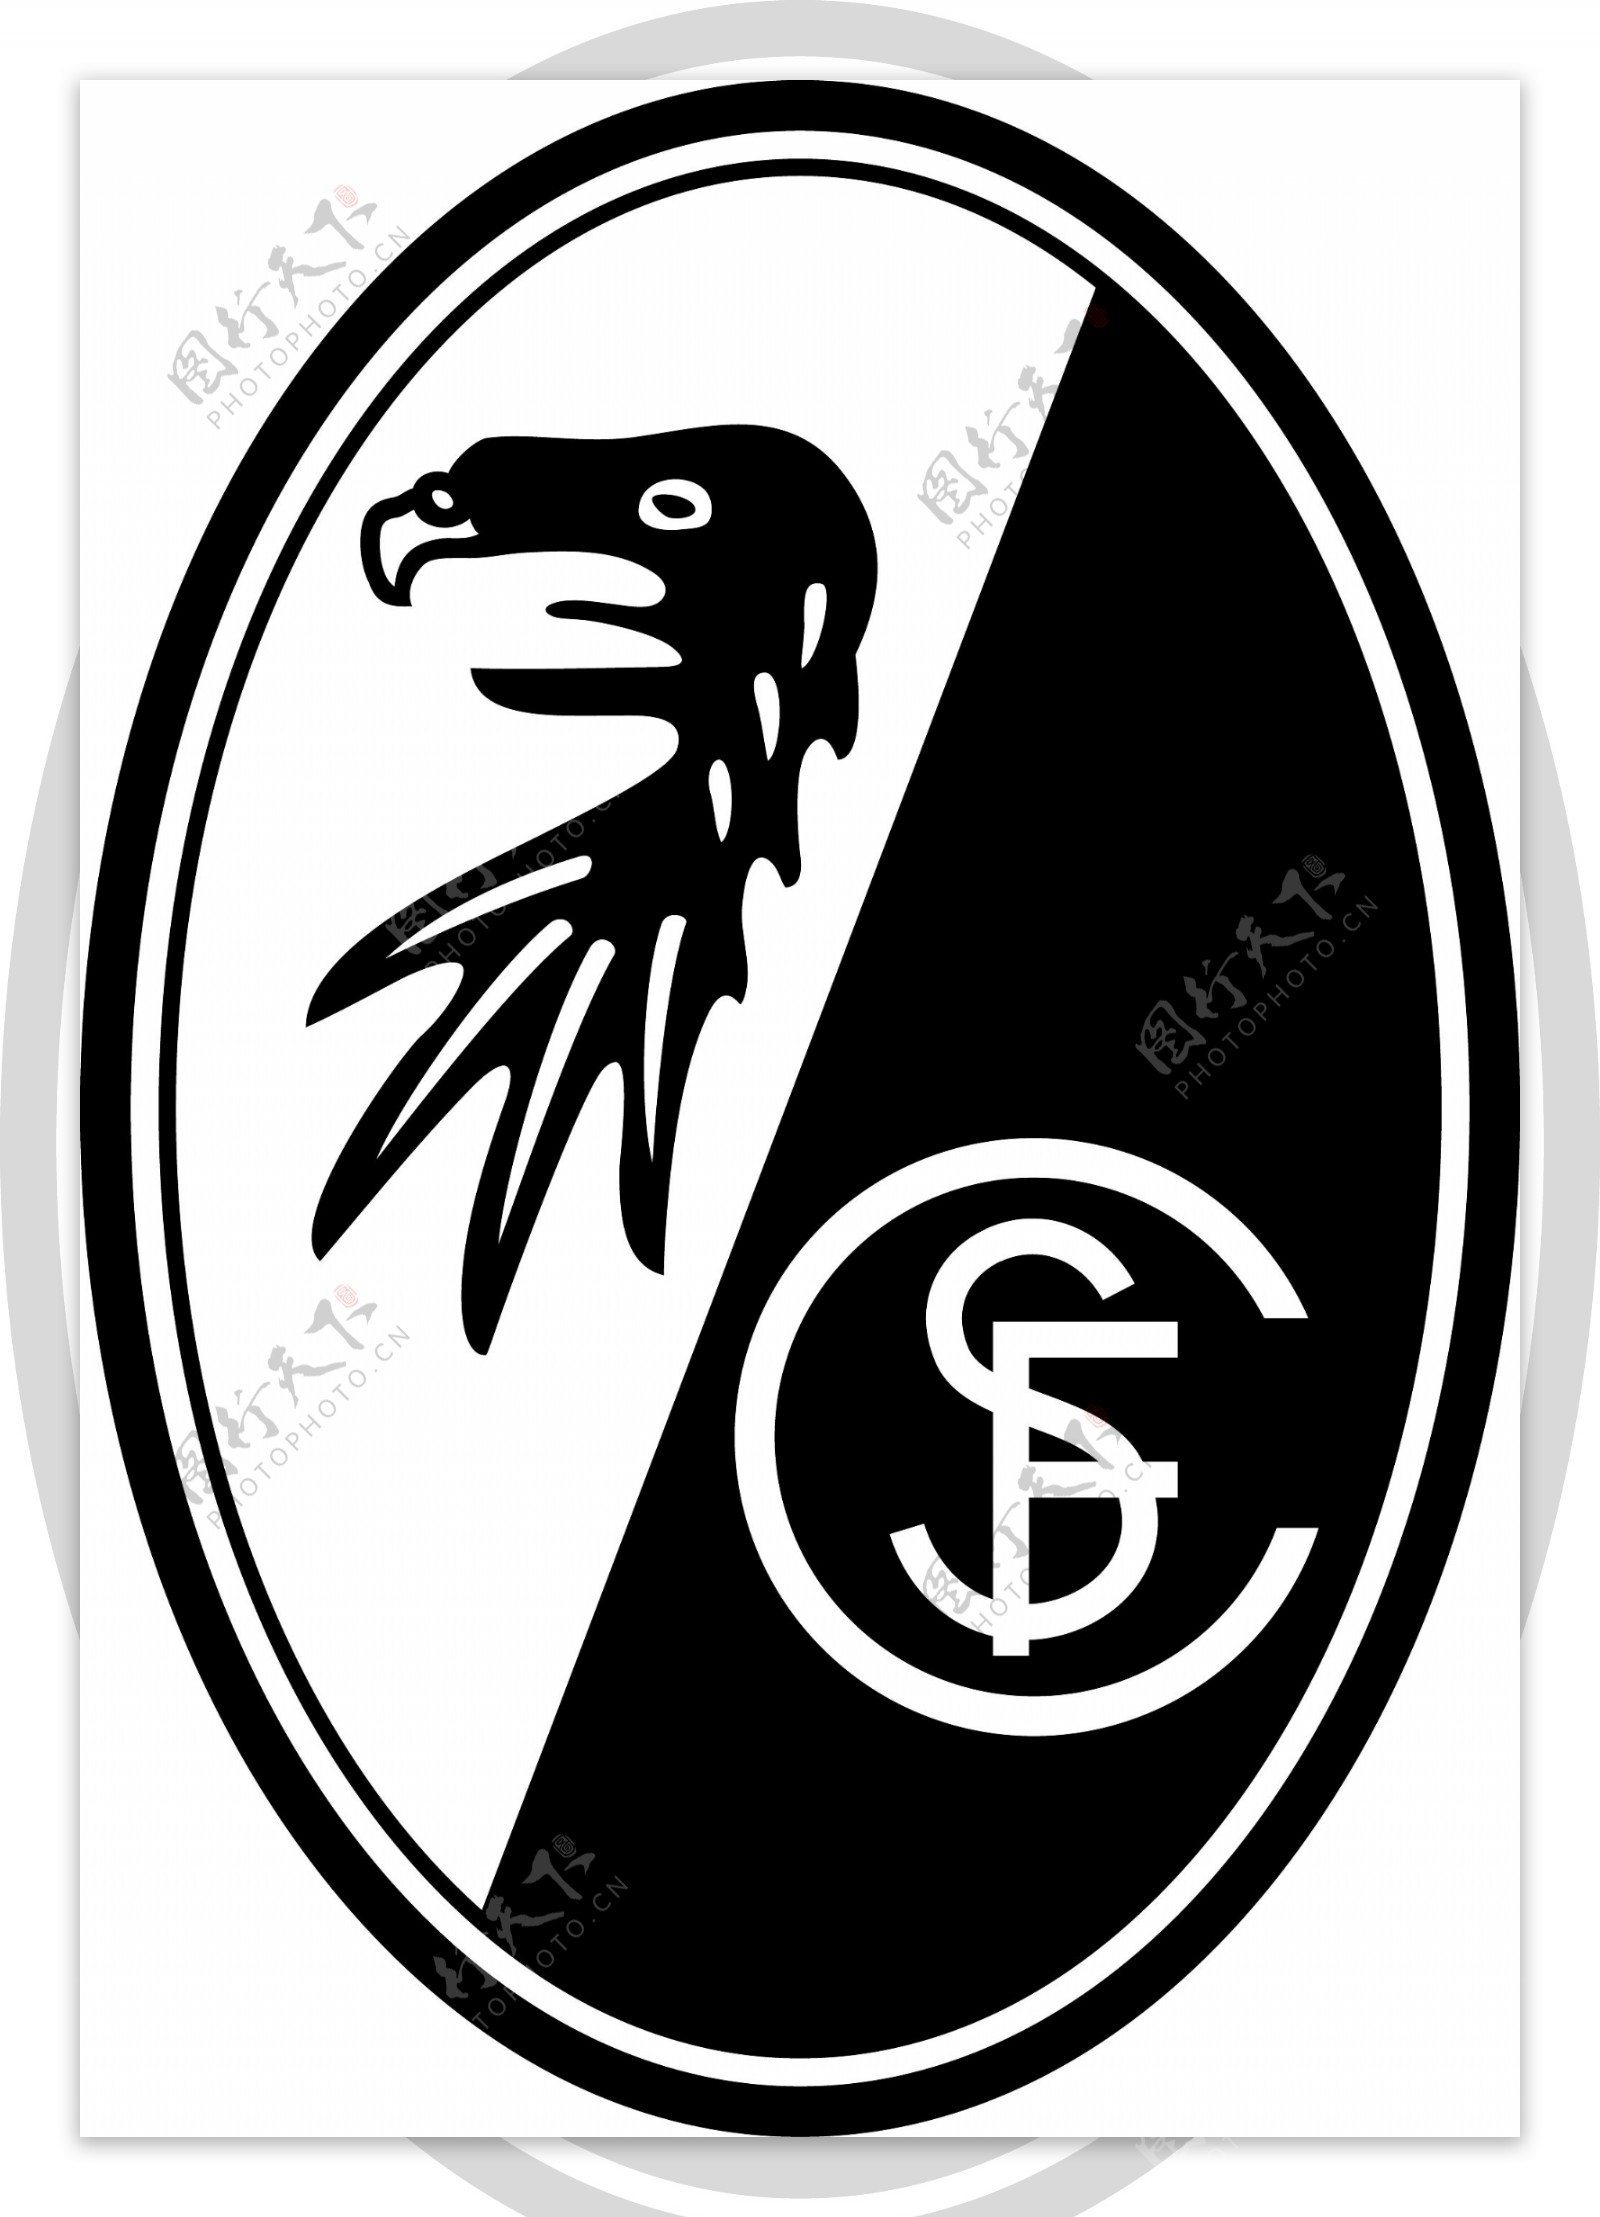 弗赖堡足球俱乐部徽标图片